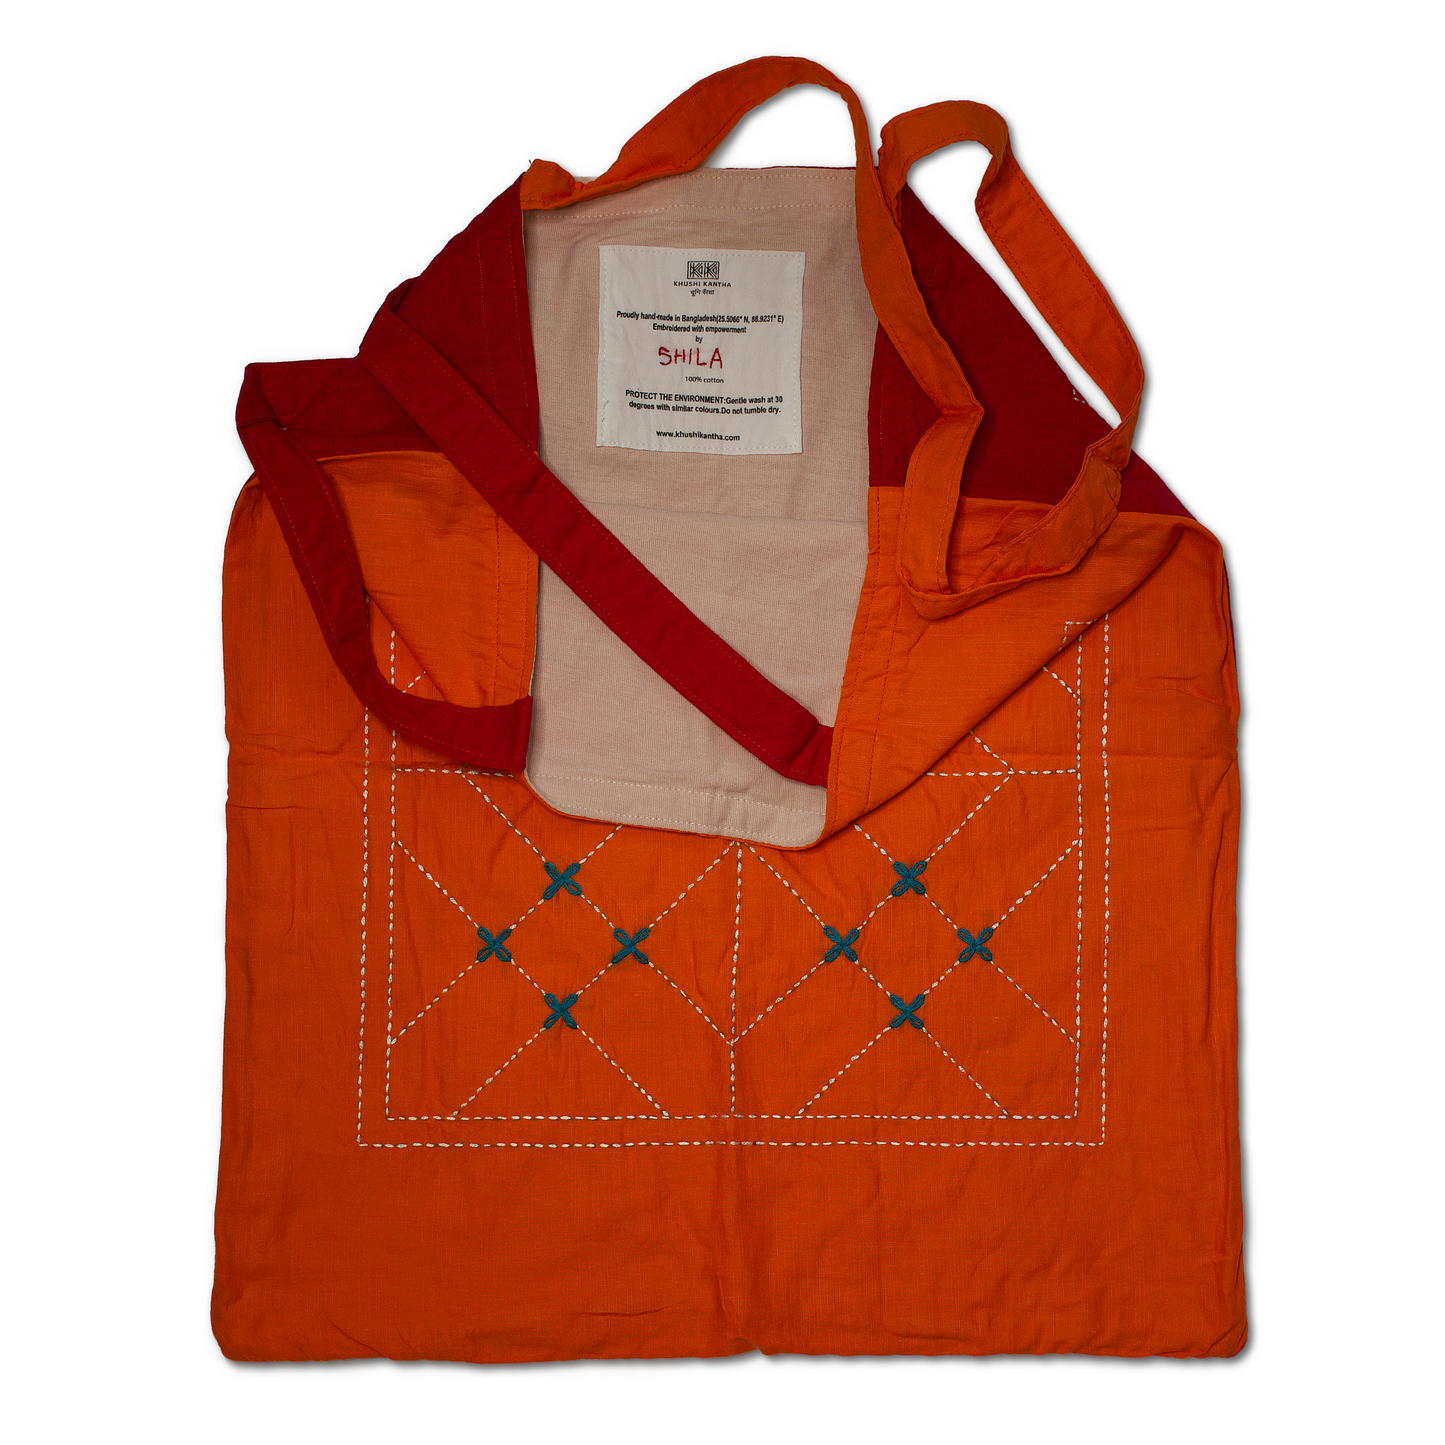 Tote Bags - Kurigram (Geometric) Design